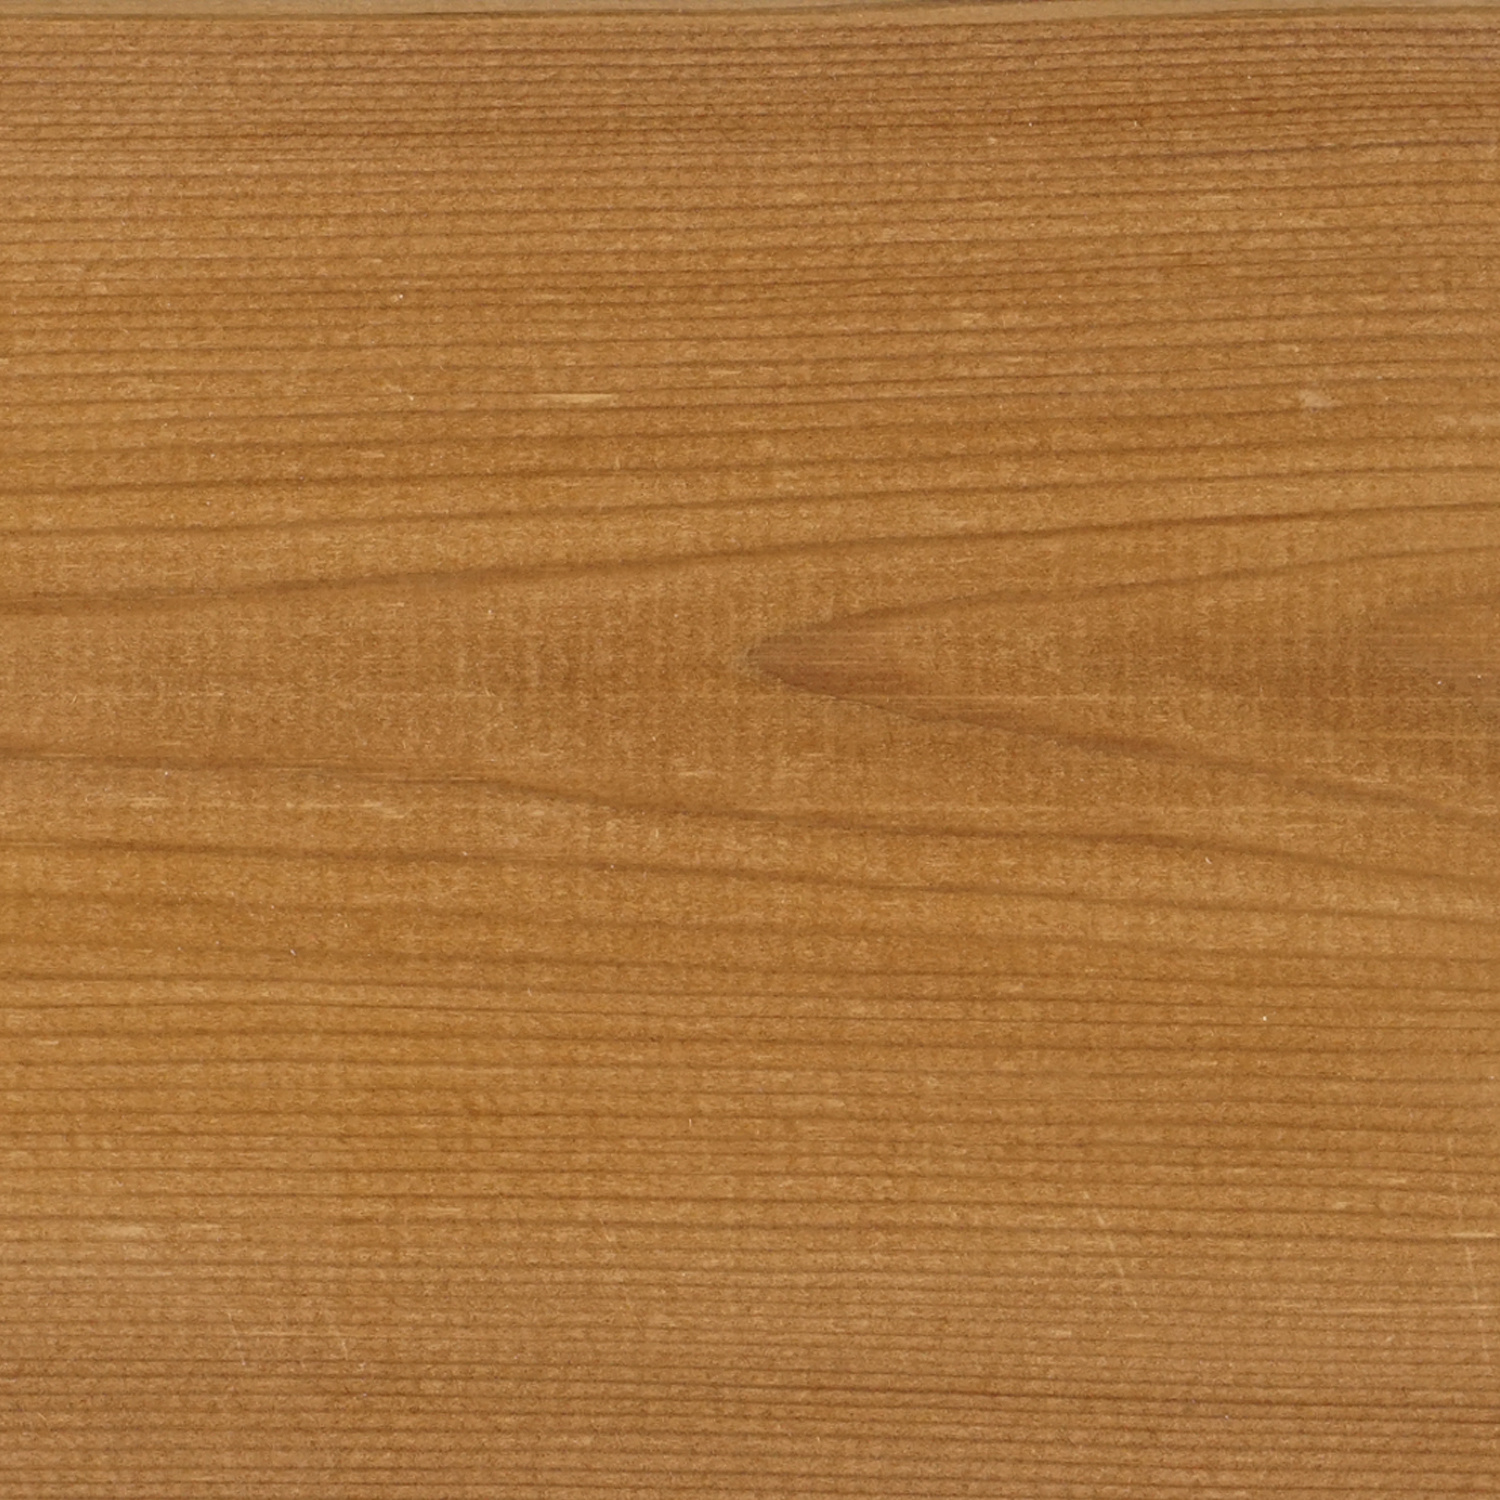  Thermowood grenen B-fix (blinde bevestiging) classic vlonder / rabat deel 21x143mm geschaafd - kunstmatig gedroogd (kd 8-12%) - thermisch gemodificeerd grenen hout (thermohout)